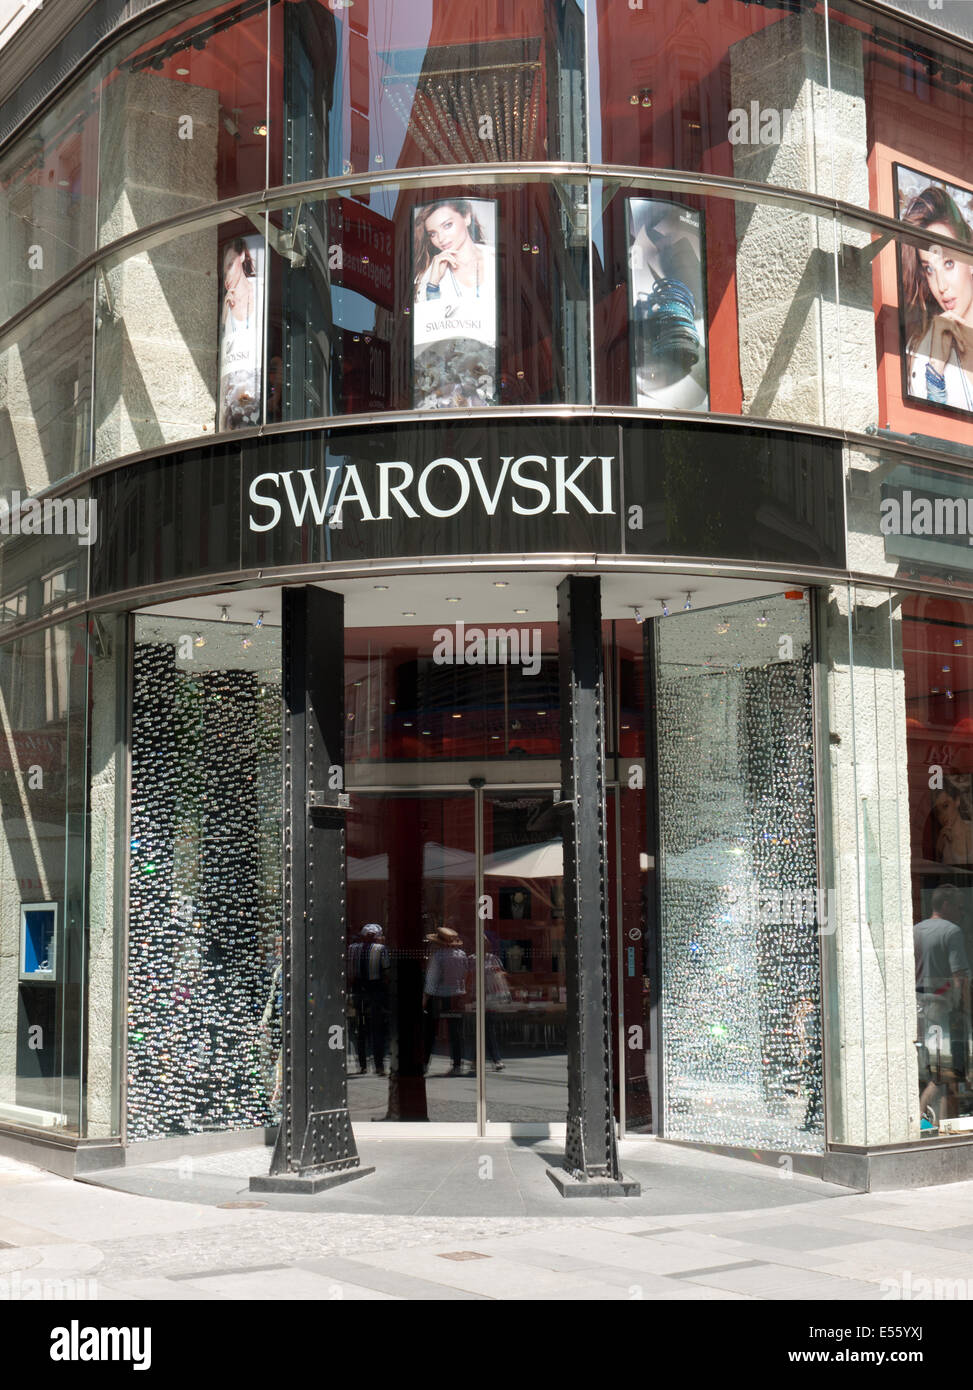 Swarovski shop in Vienna, Austria Stock Photo - Alamy